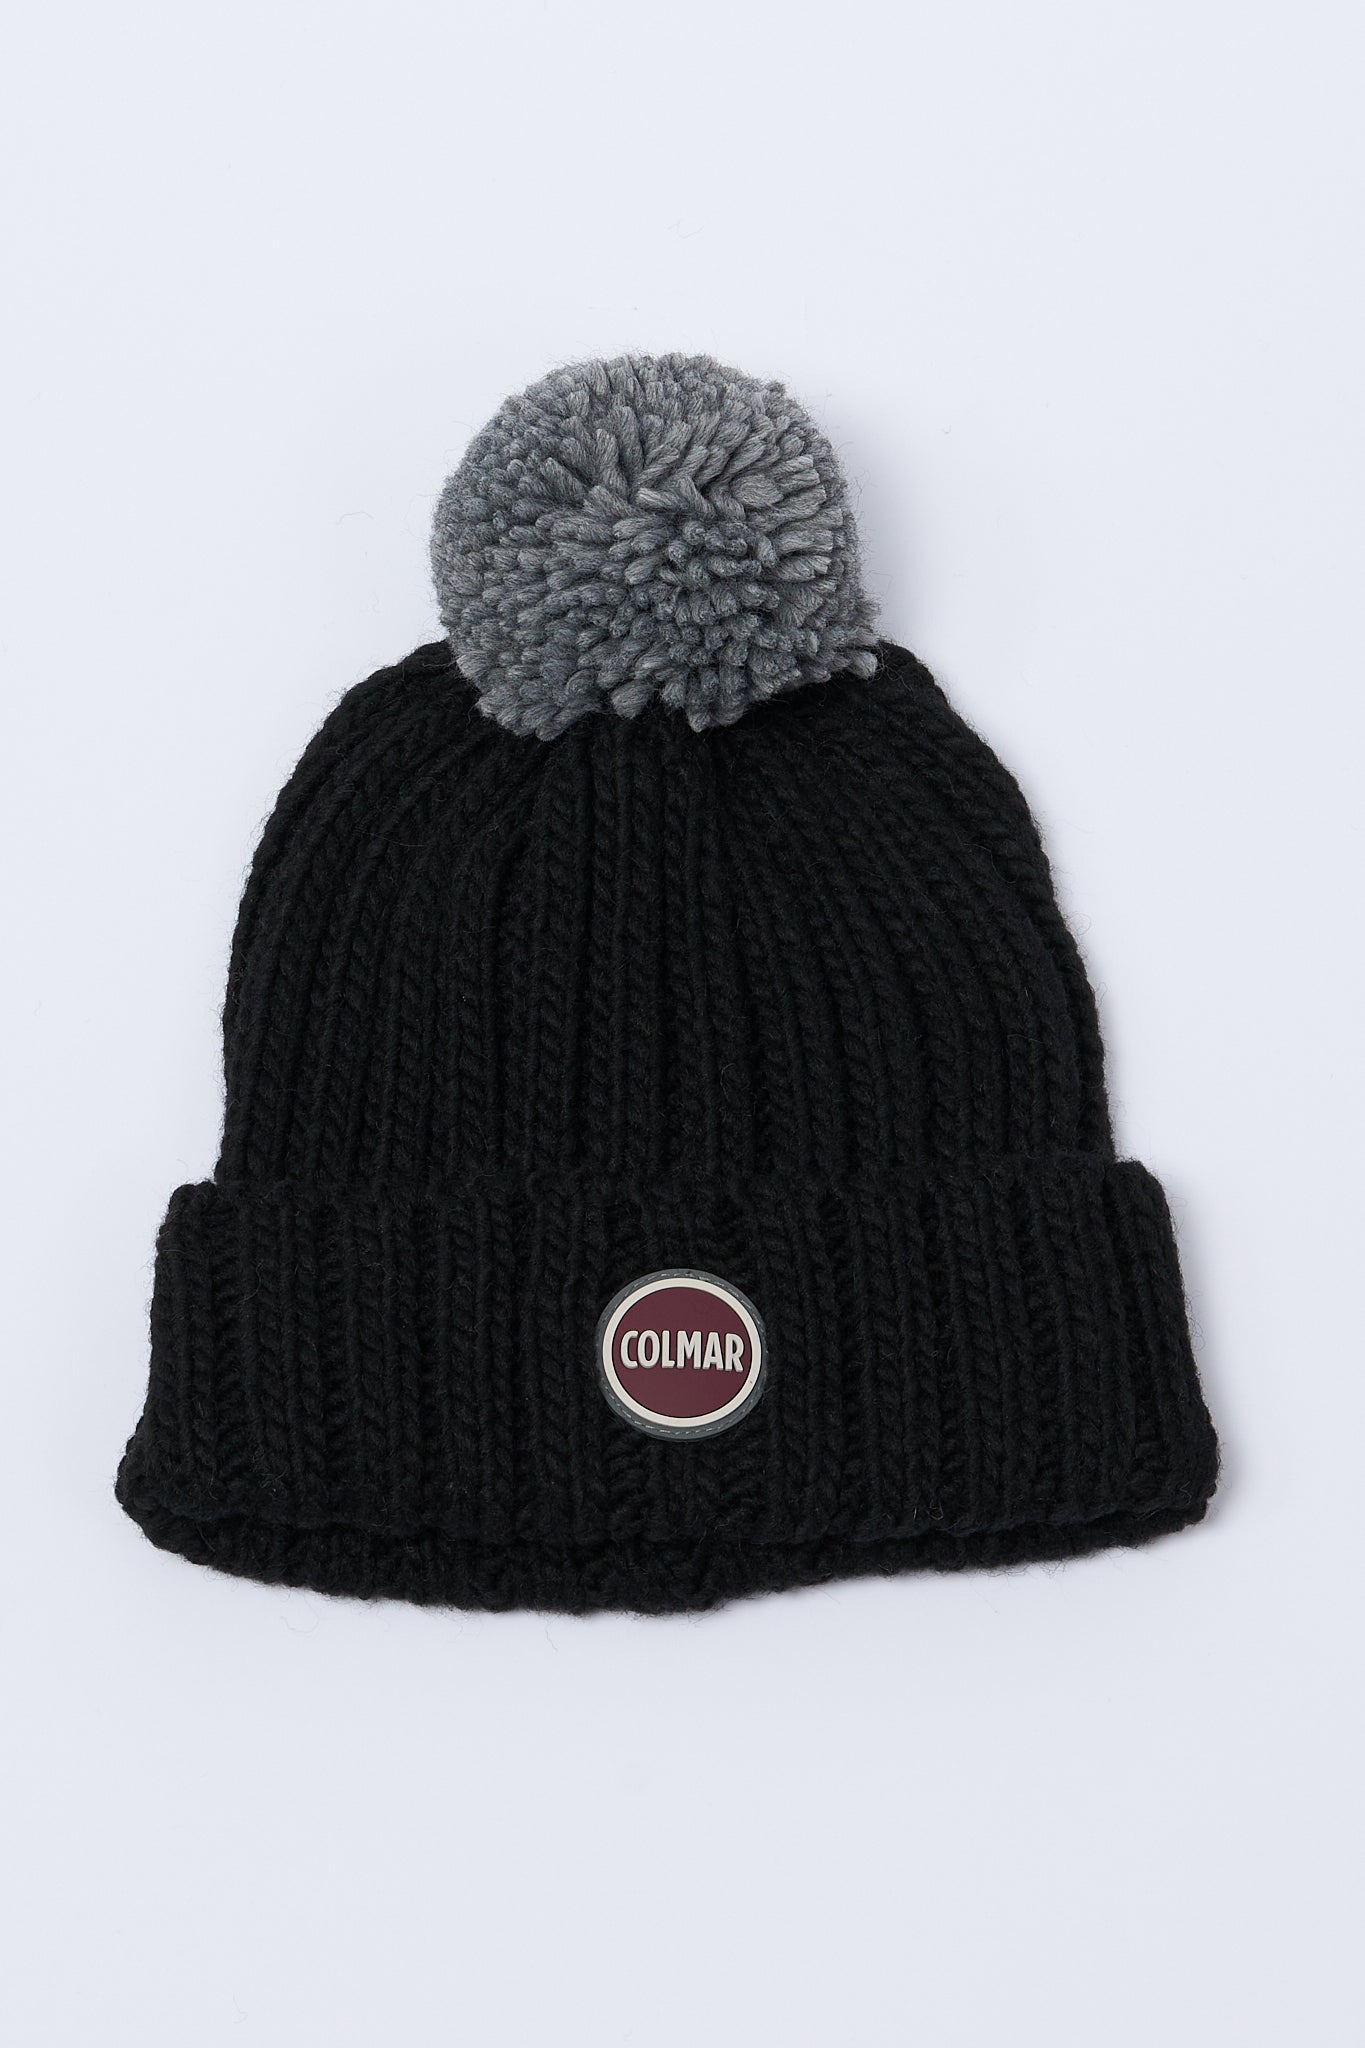 Colmar Originals Black Cap for Men-1